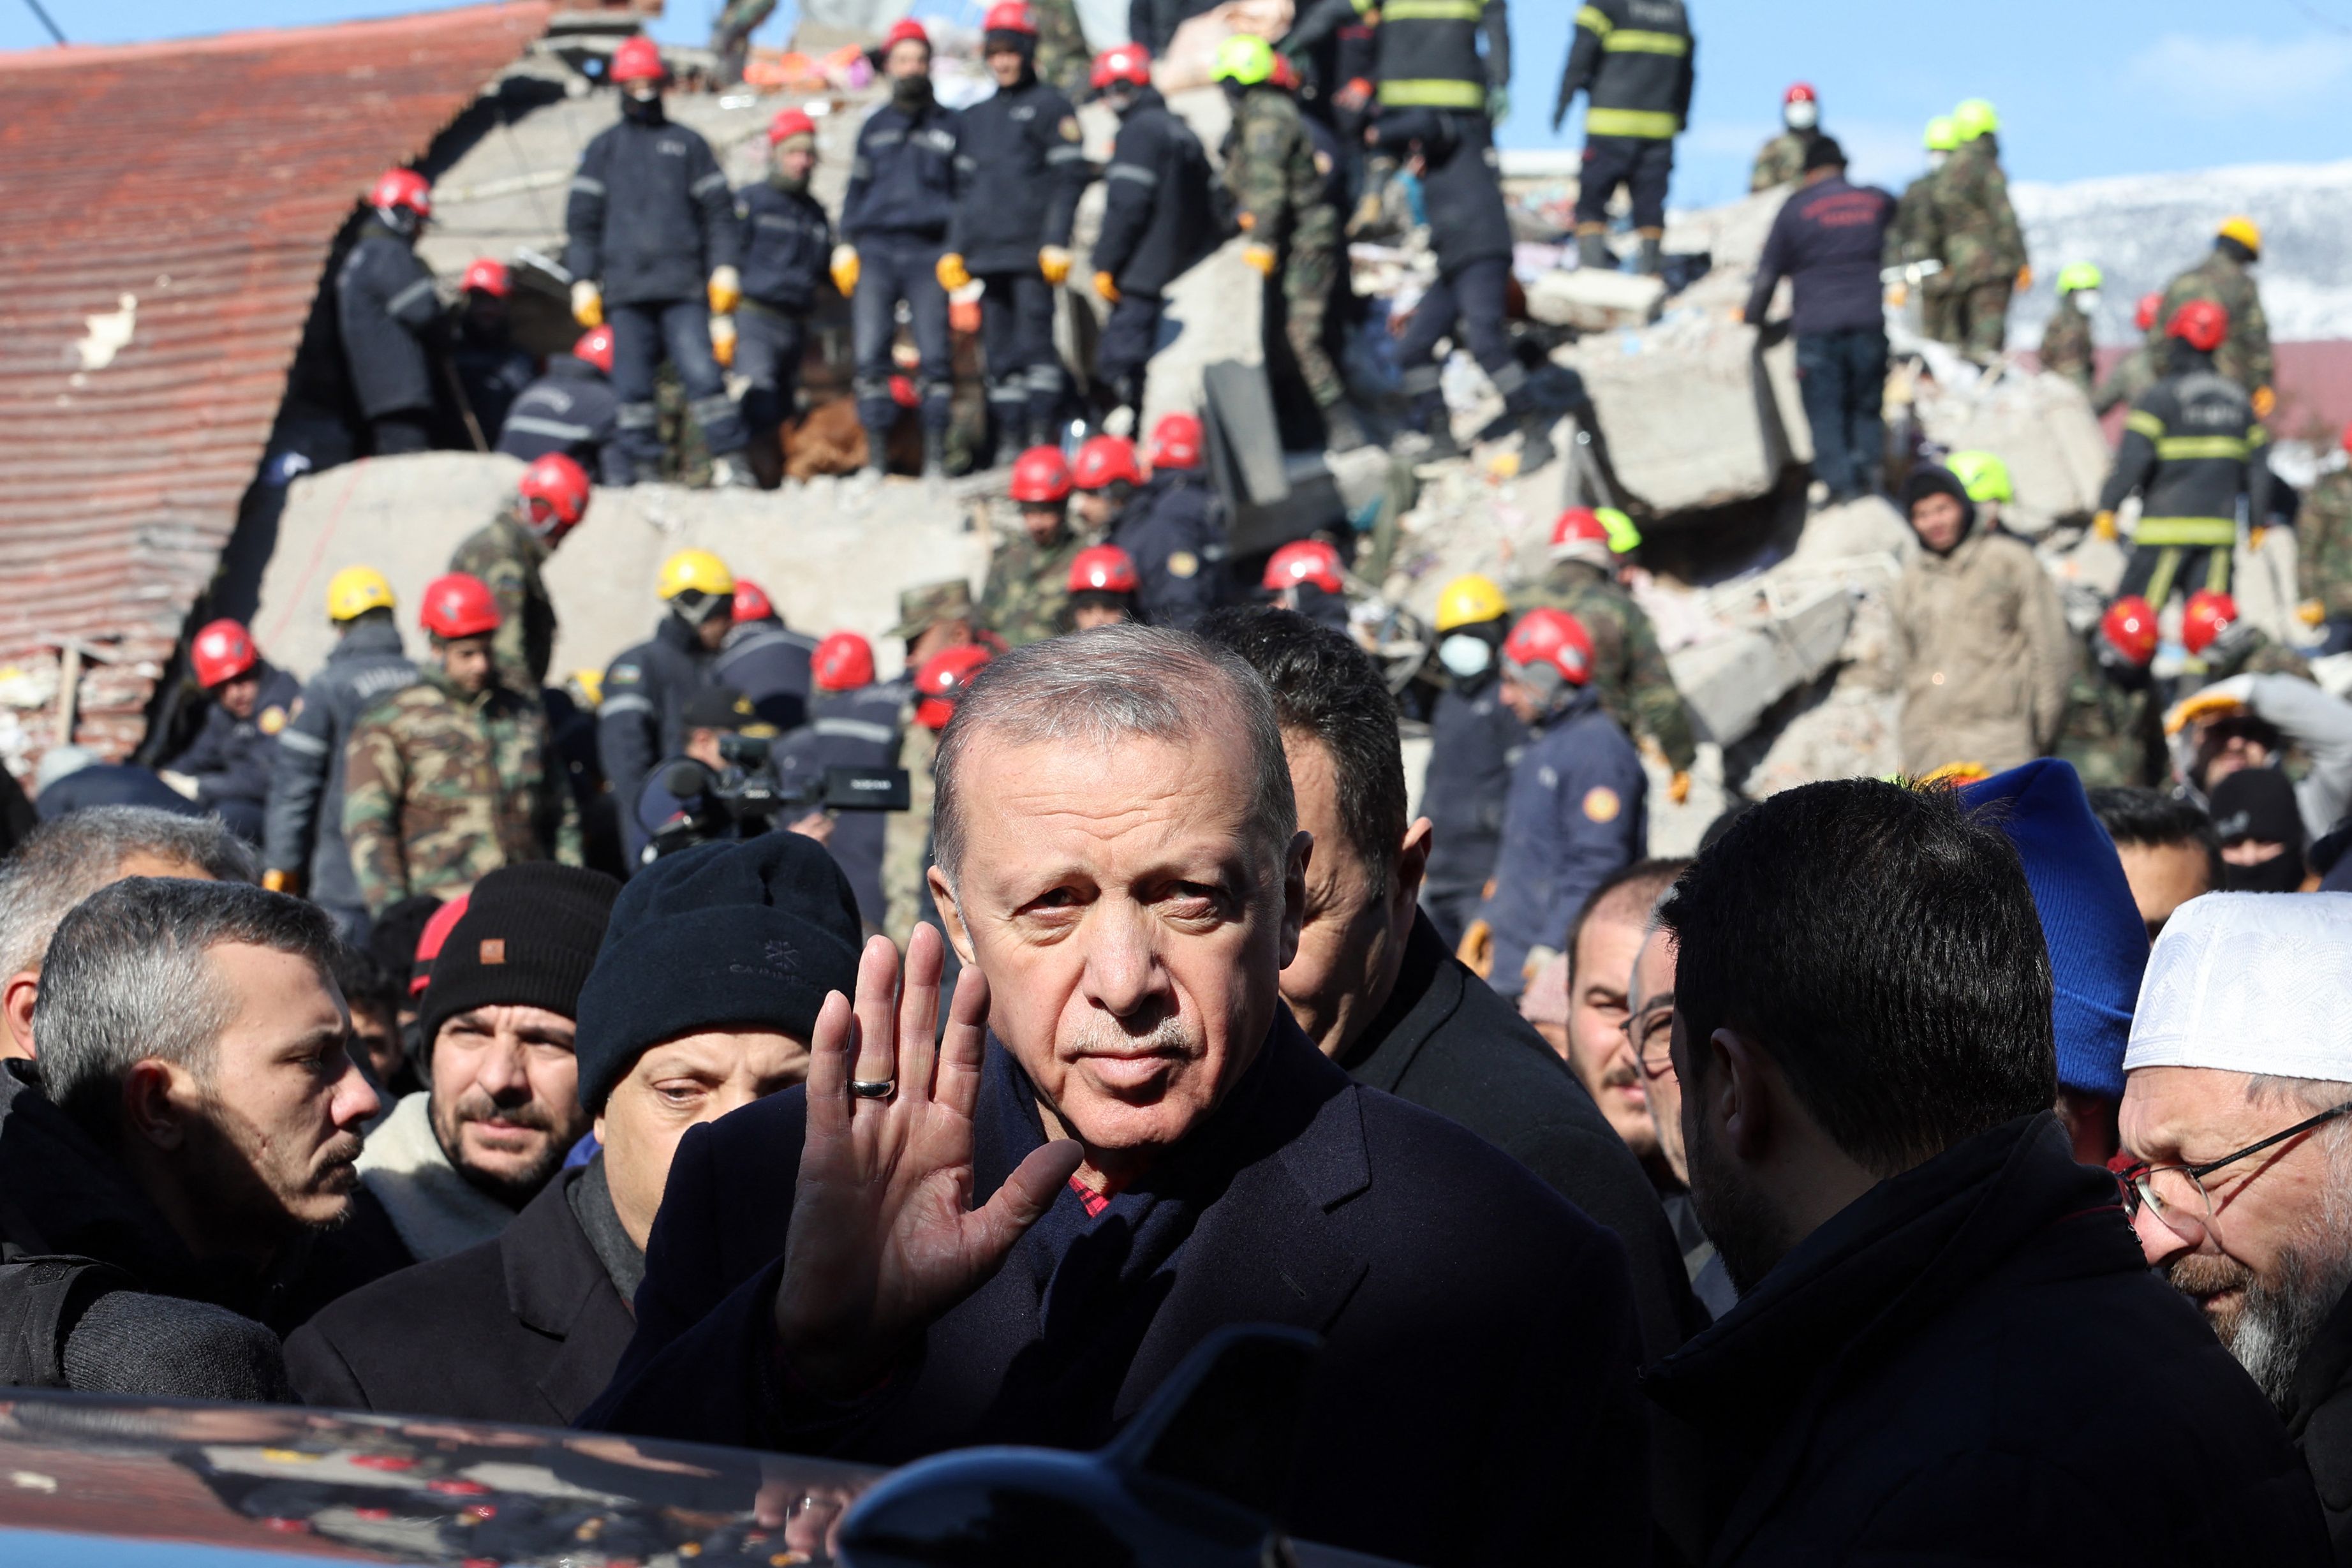 Le président turc, Recep Tayyip Erdogan, s’est rendu sur un site de bâtiments détruits lors de sa visite dans la ville de Kahramanmaras. (AFP)